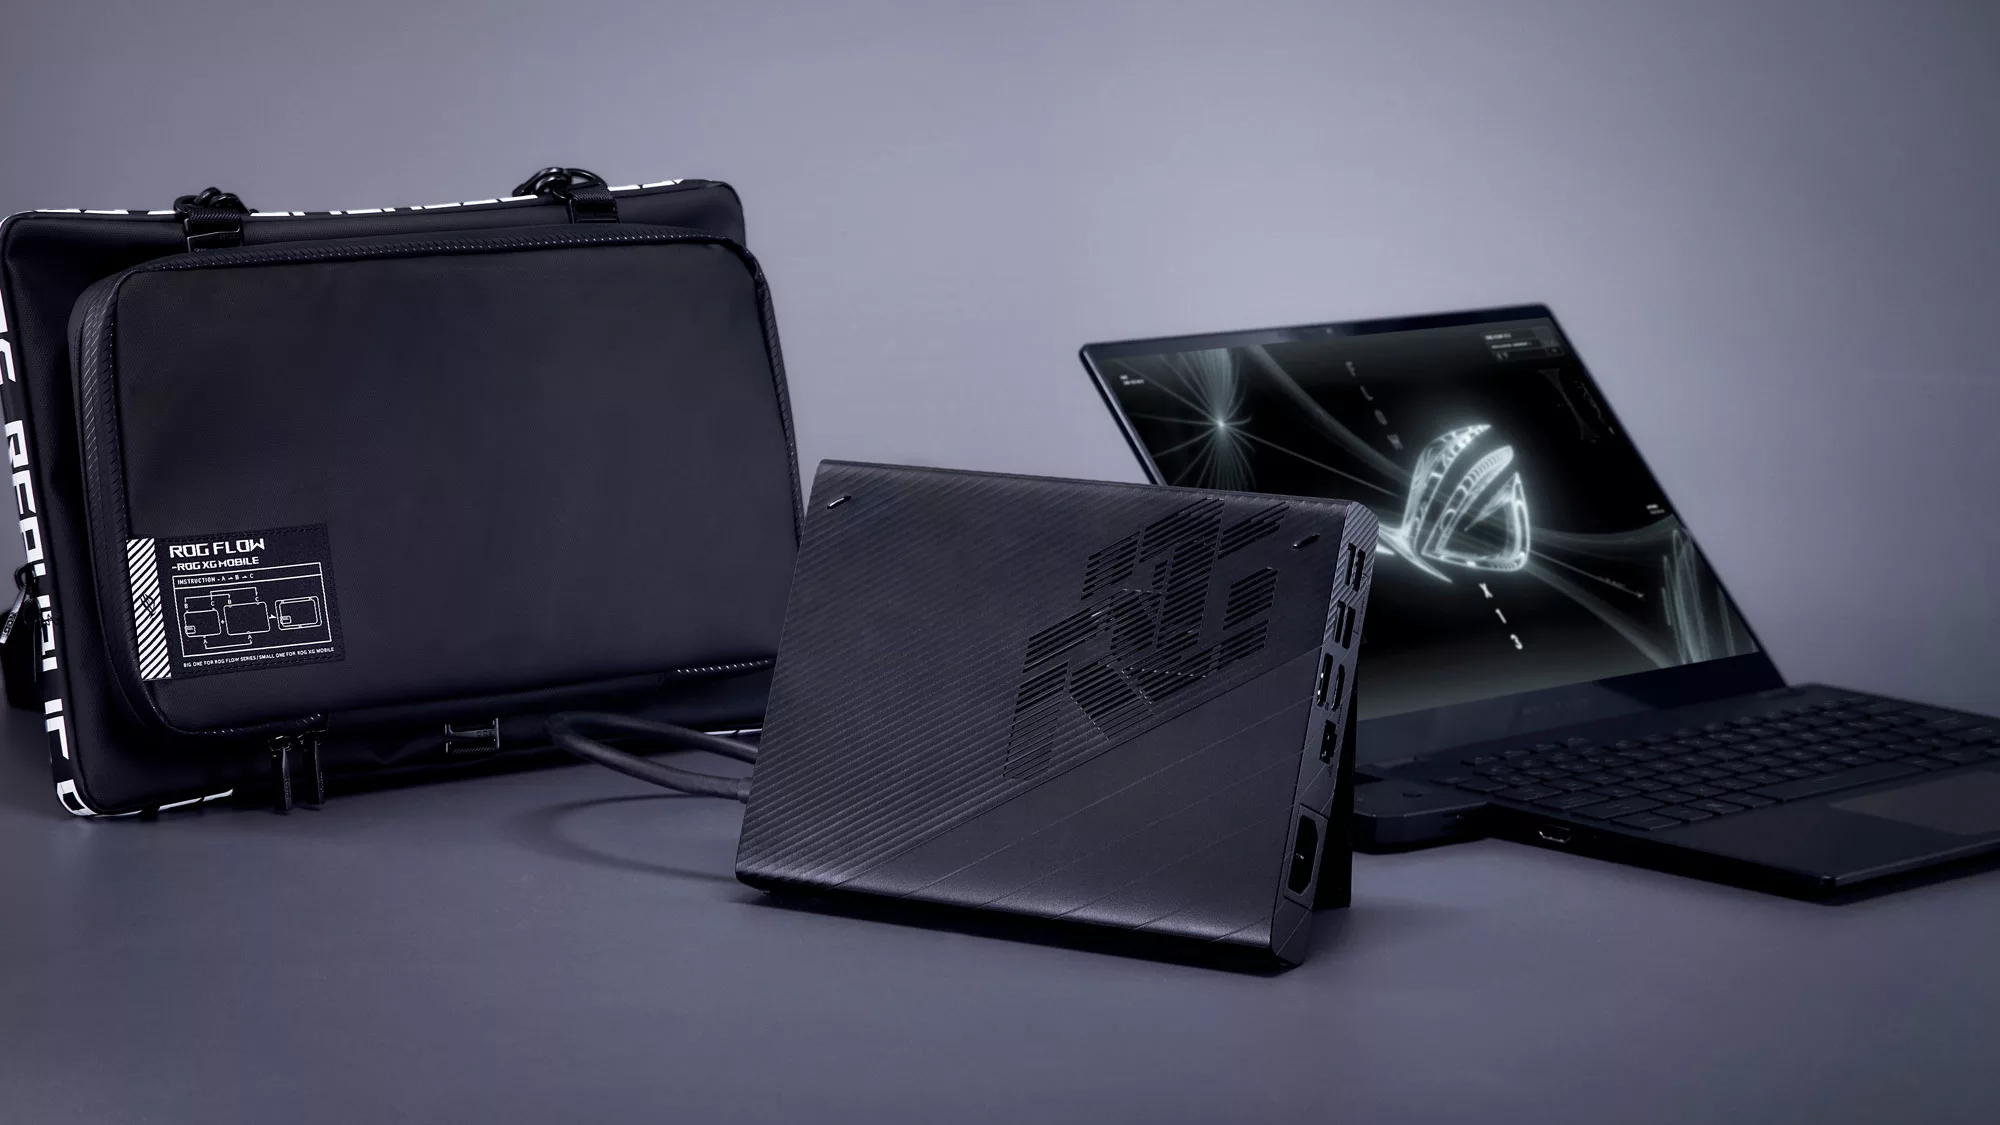 Ноутбук ROG Flow X13 с внешней графической станцией XG Mobile и сумкой